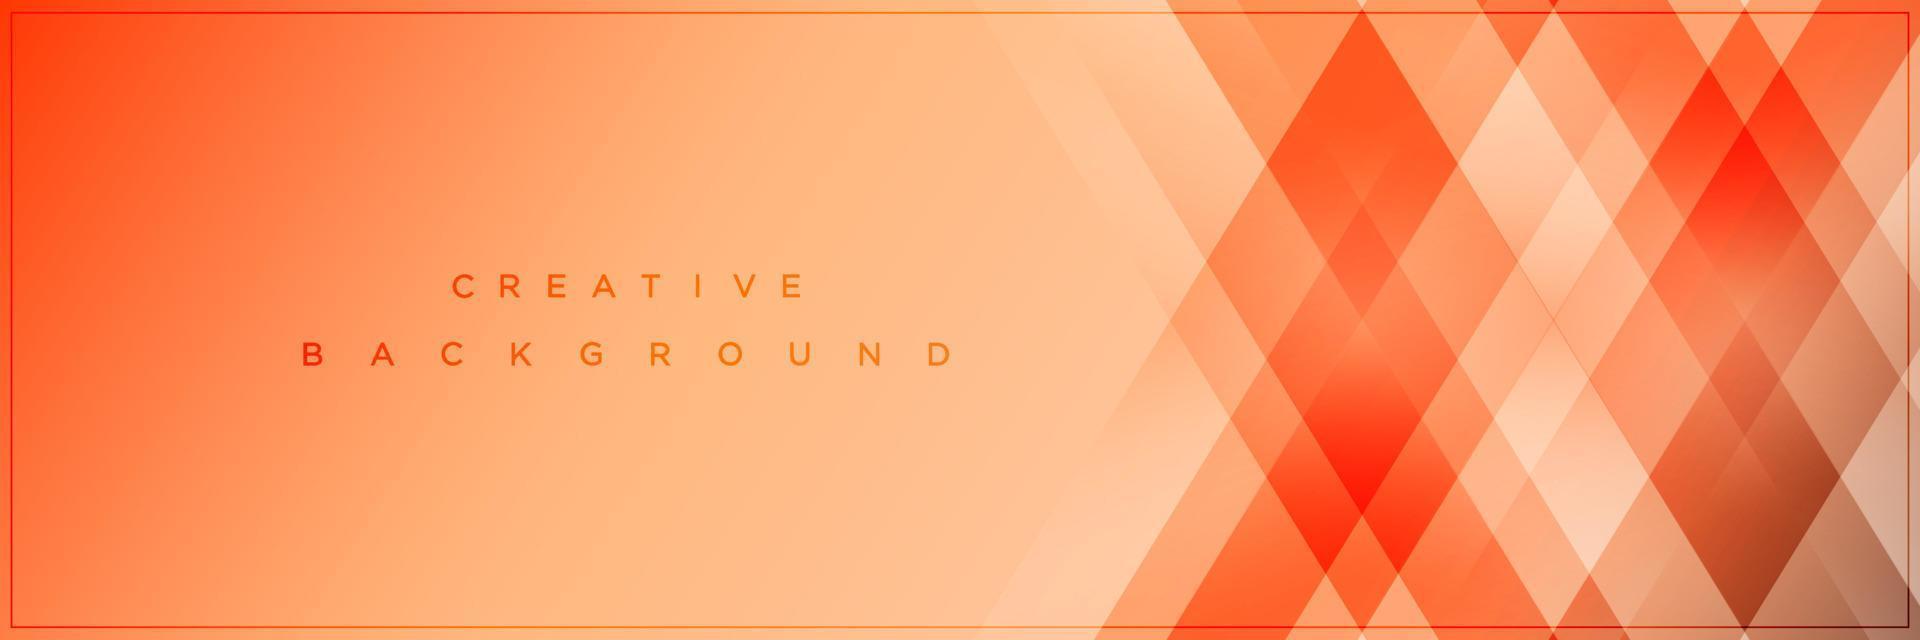 Modern abstract orange gradient banner background design vector